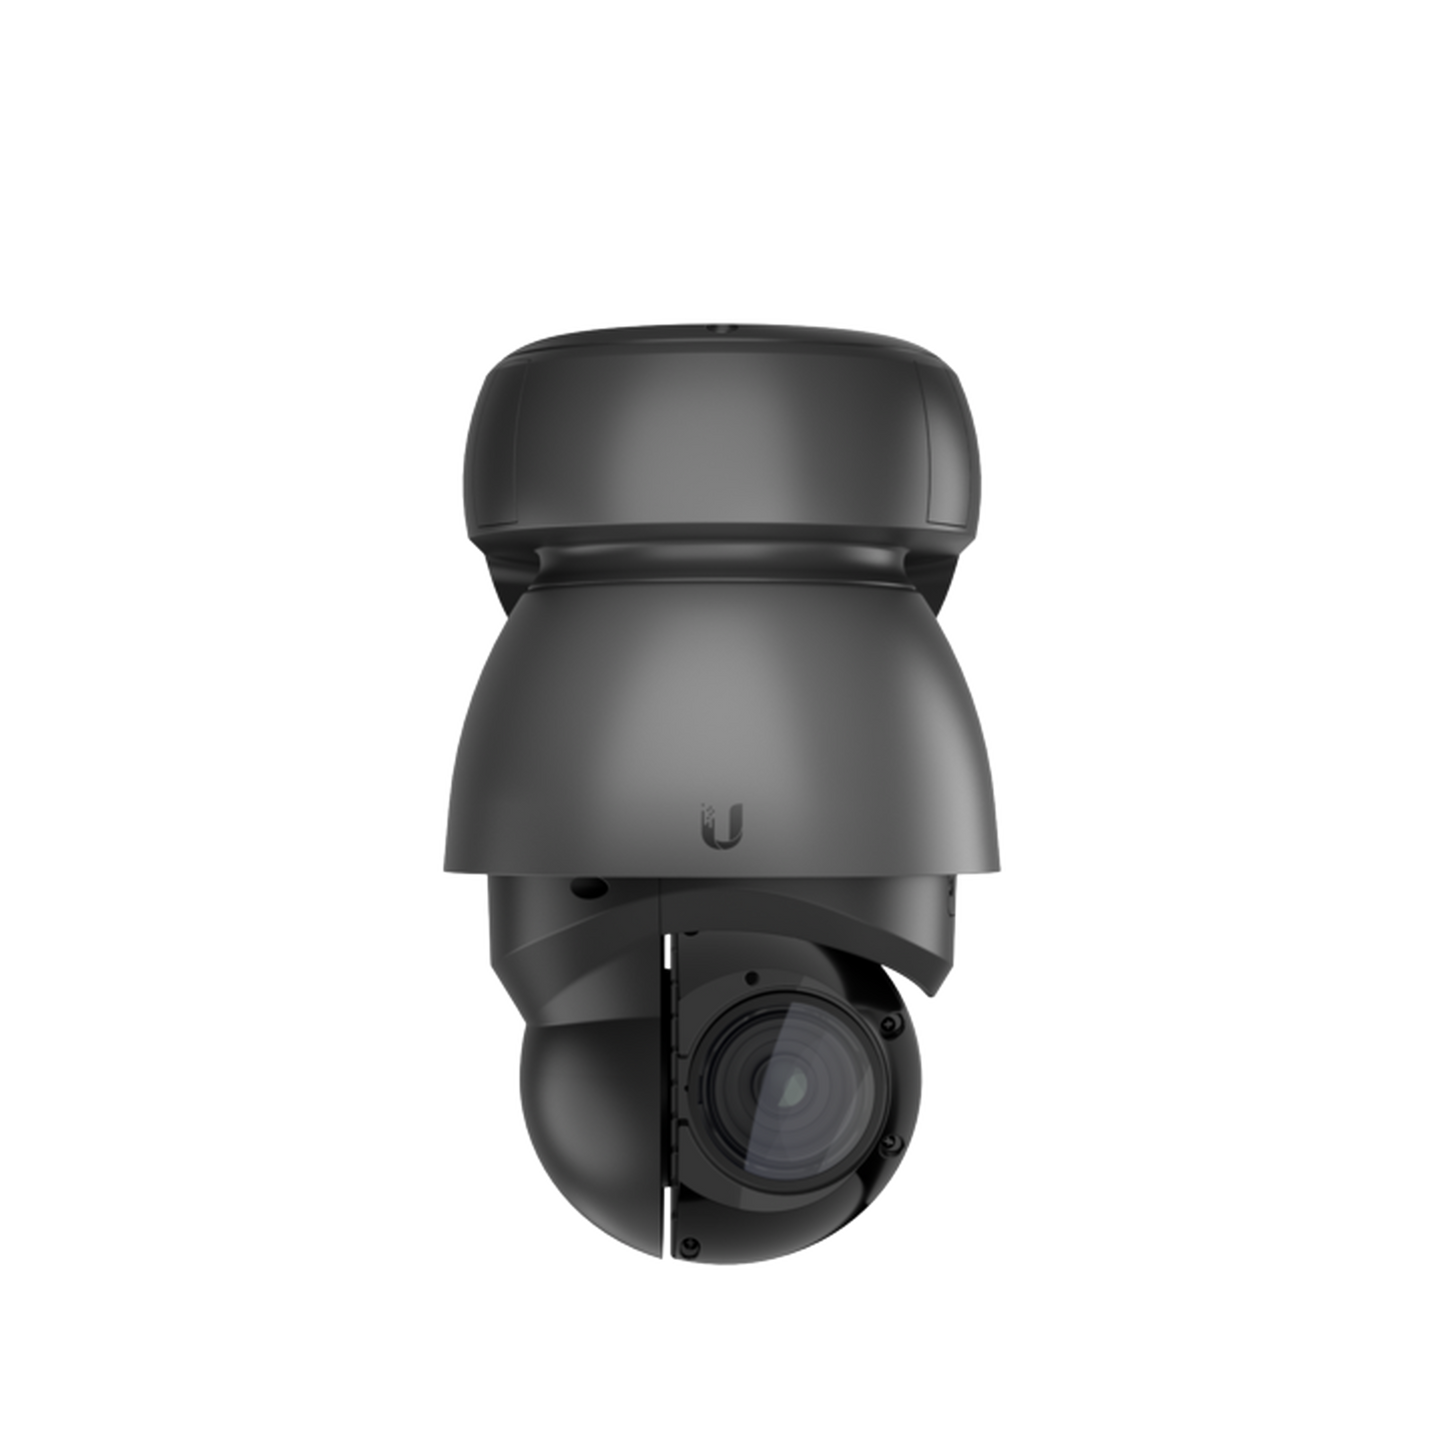 UniFi Protect G4 PTZ cámara de giro, inclinación y zoom de alto rendimiento con transmisión de video 4K, 24 FPS, zoom óptico 22x y visión nocturna LED IR adaptativa.